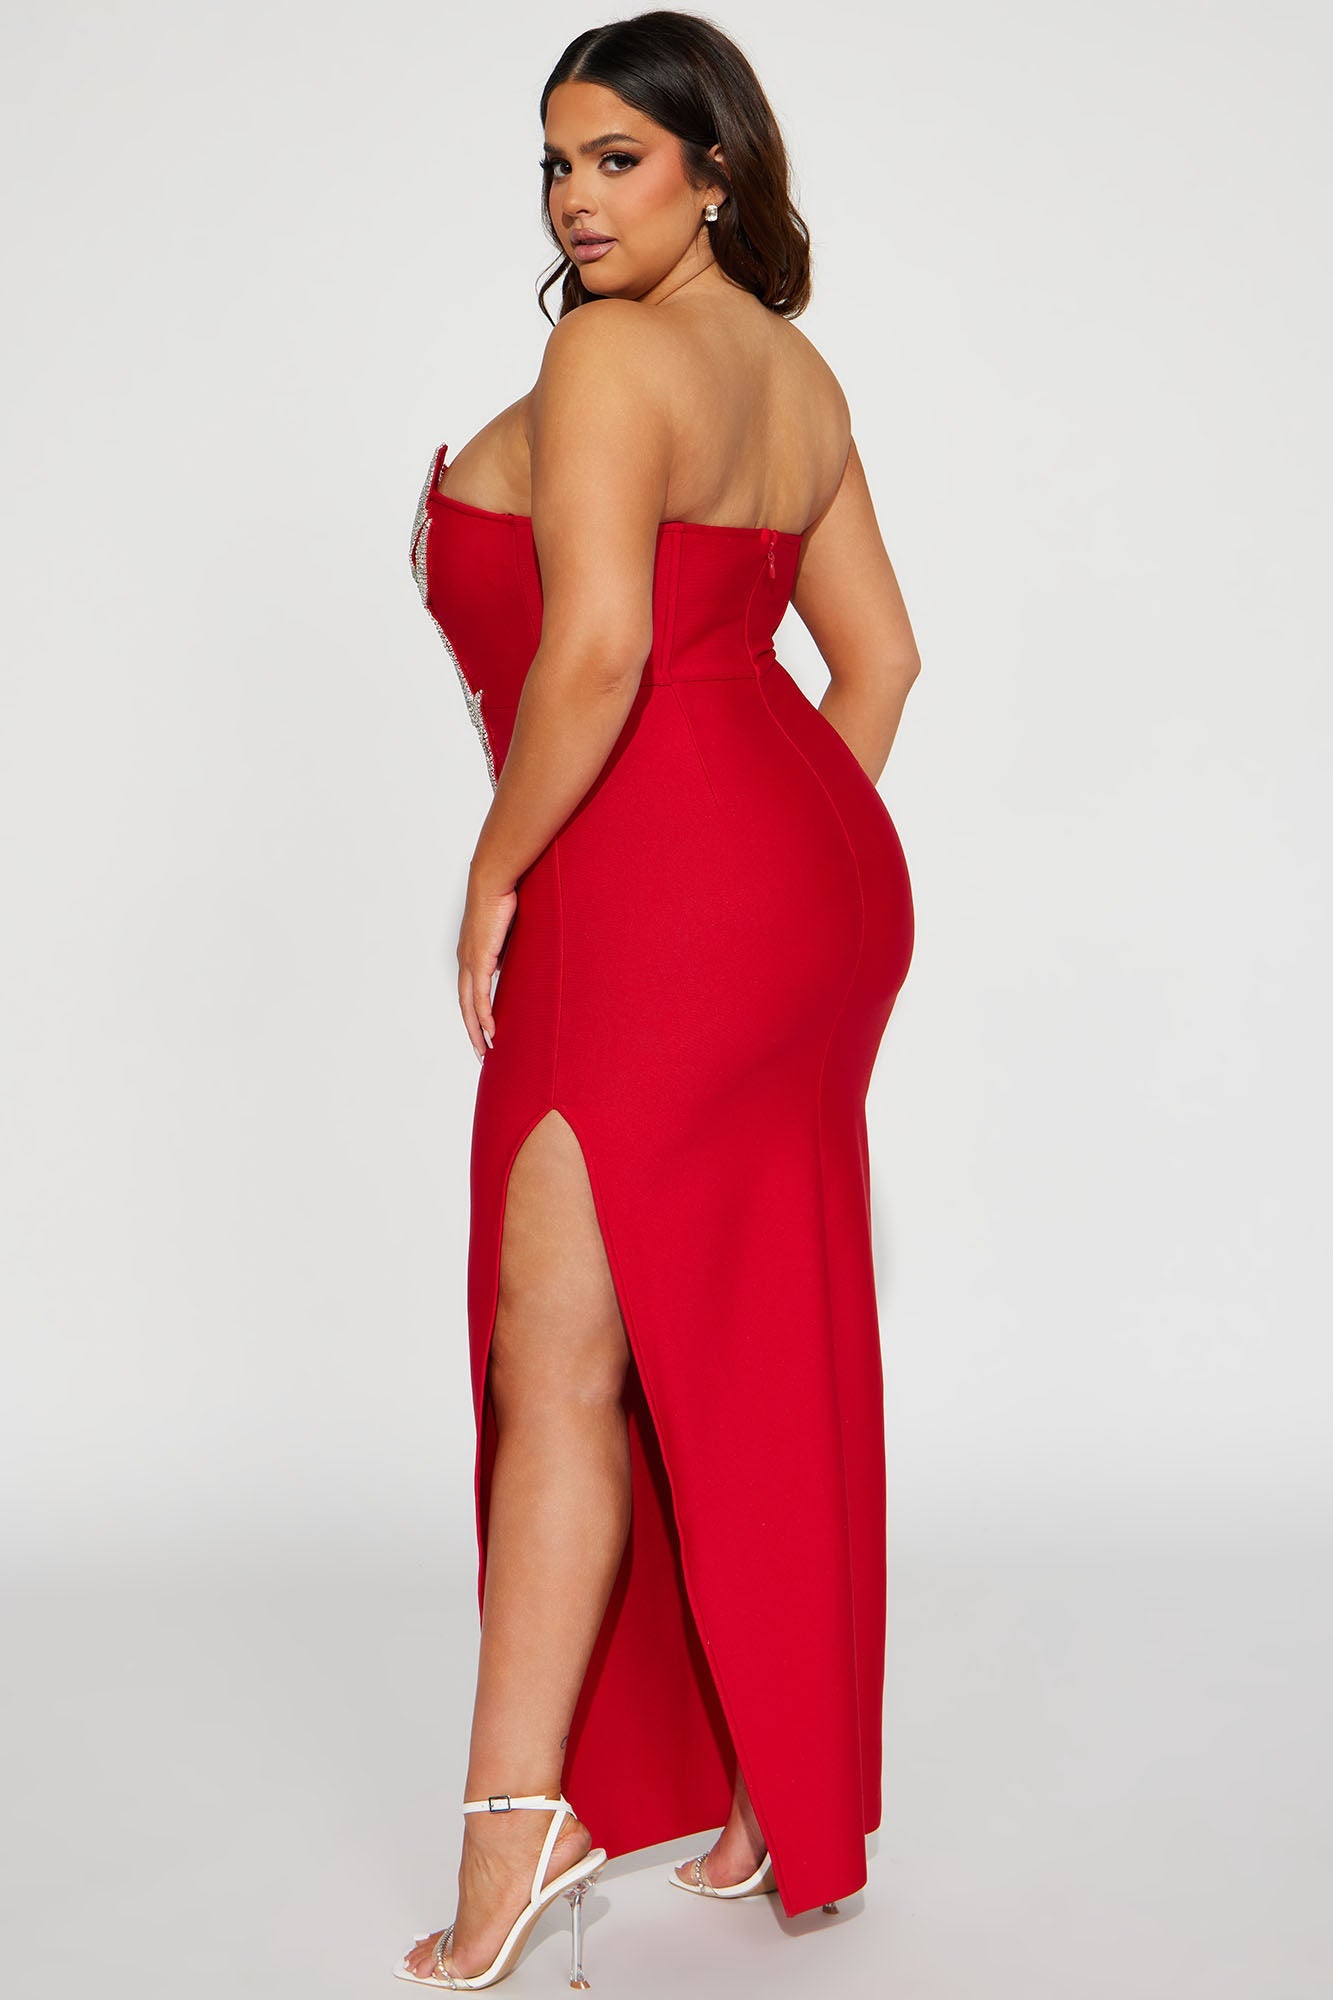 Oscars Lady Embellished Maxi Dress - Red